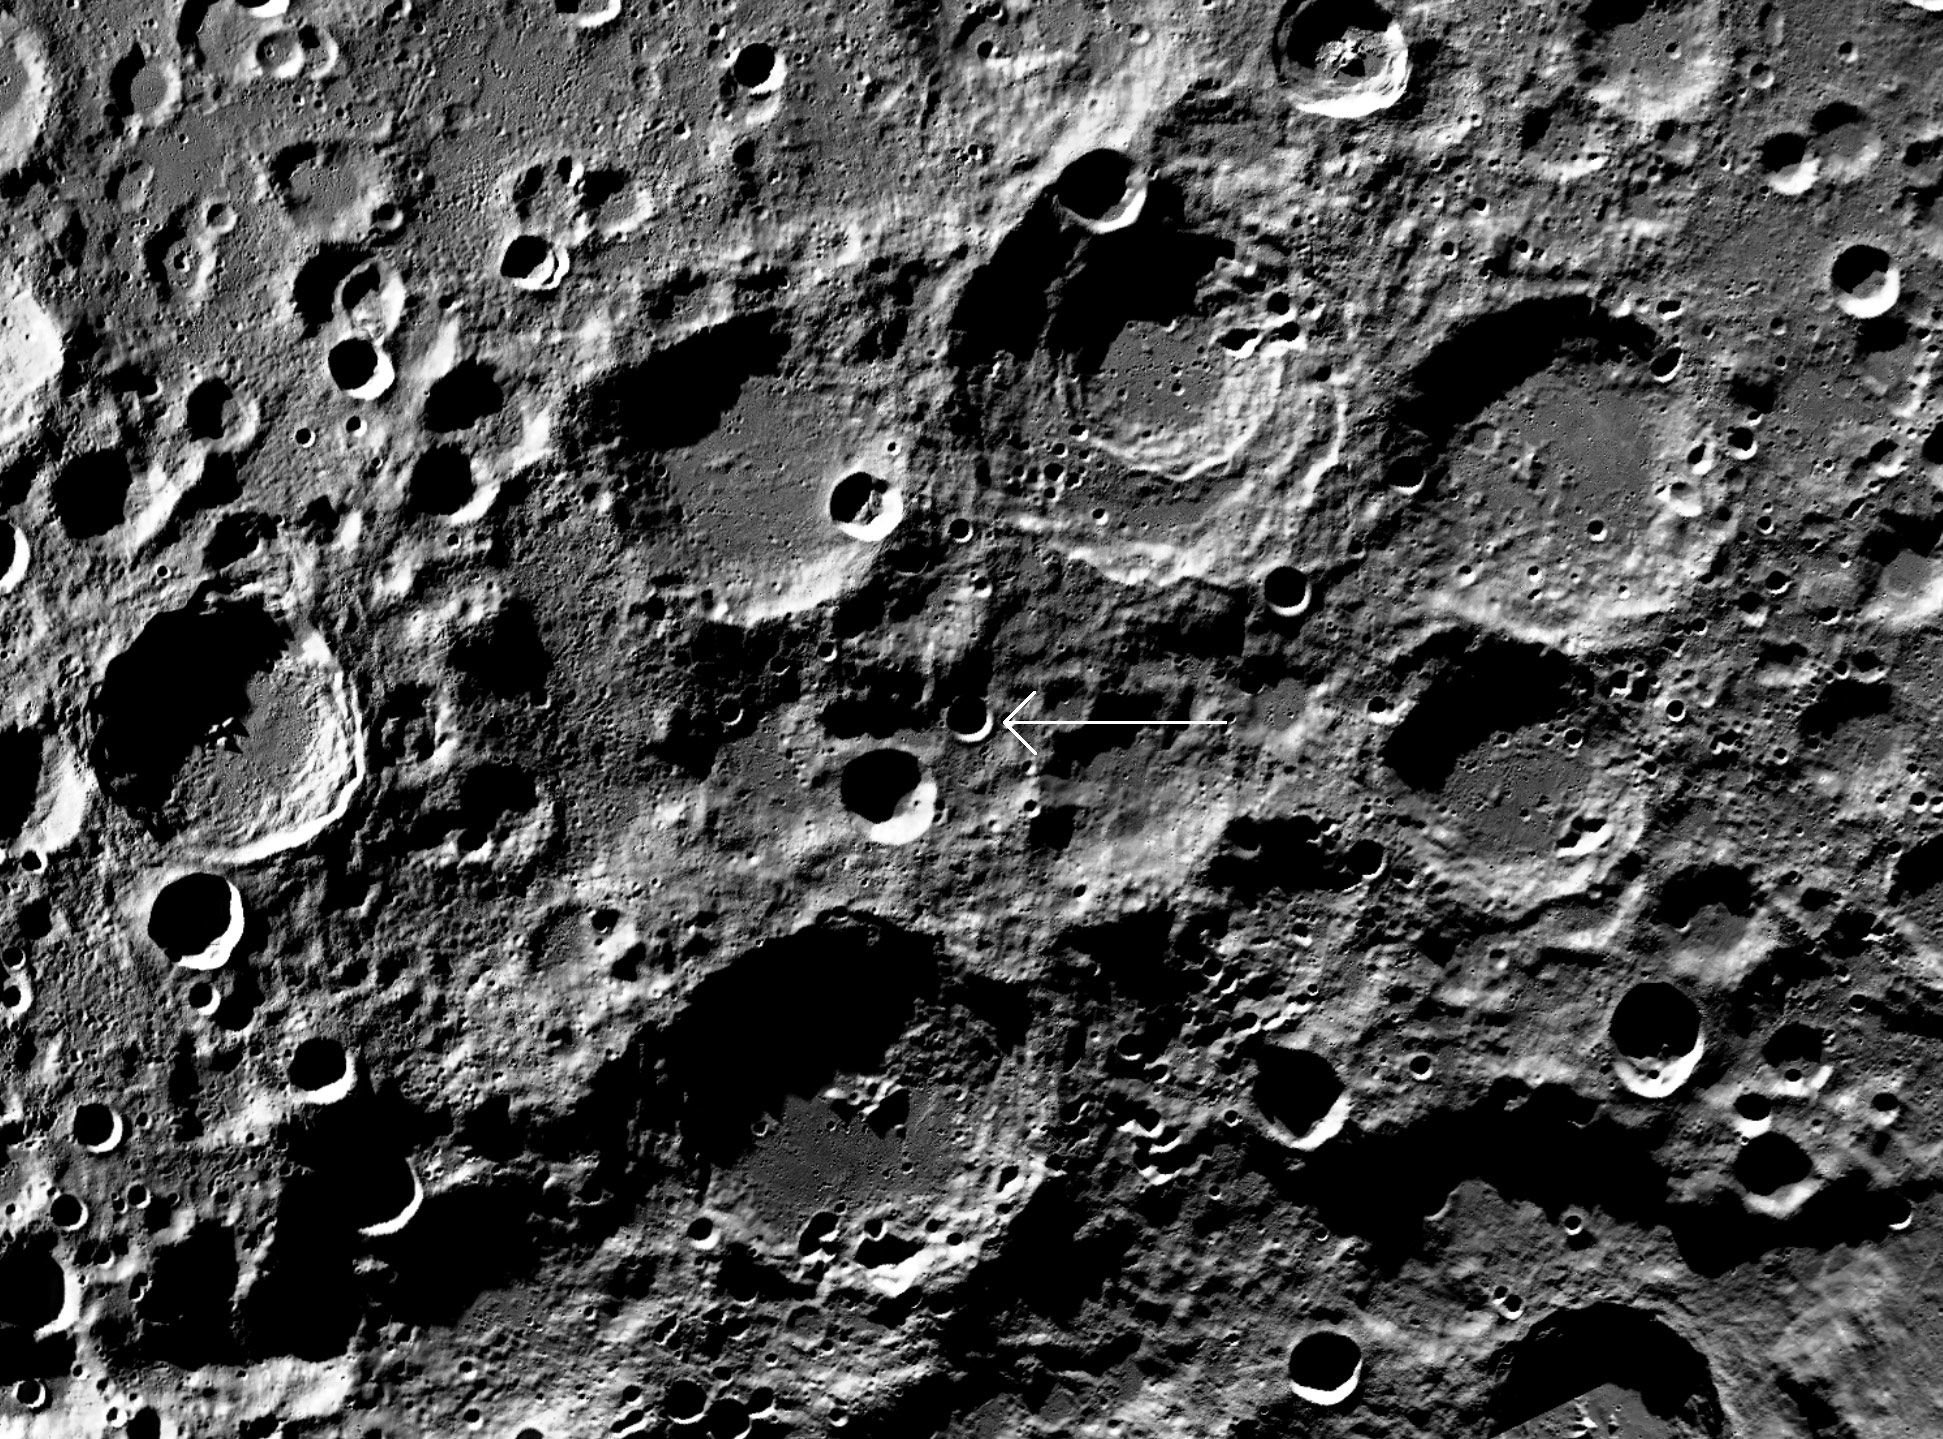 Ковид поверхности. Кратер Лунная поверхность Луны. Меркурий кратеры поверхность планеты. Рельеф Луны кратеры. Кратер Коперник на Луне.